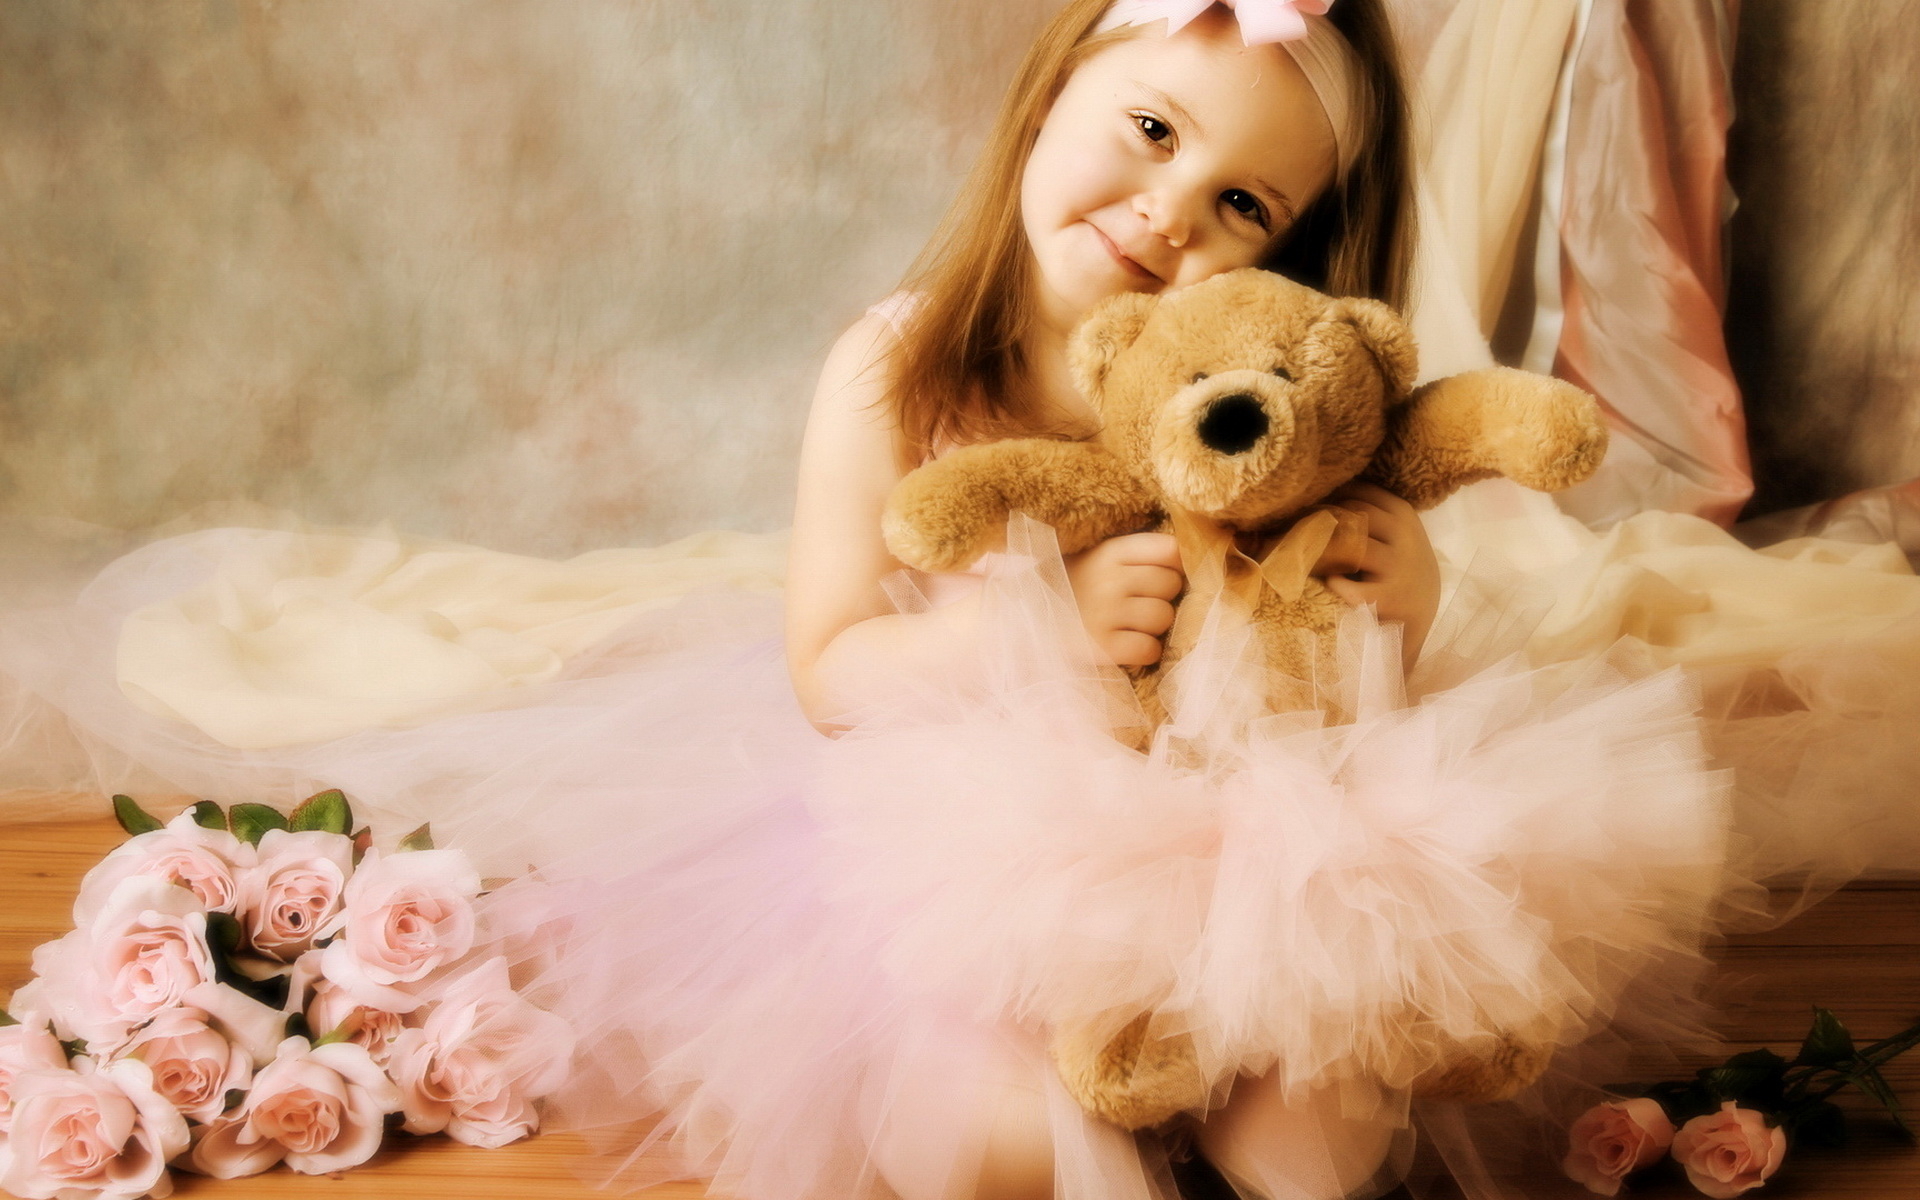 Я люблю маленьких девочек. Девочка с мишкой. Маленькие принцессы. Маленькая девочка с мишкой. Девочка с медвежонком.